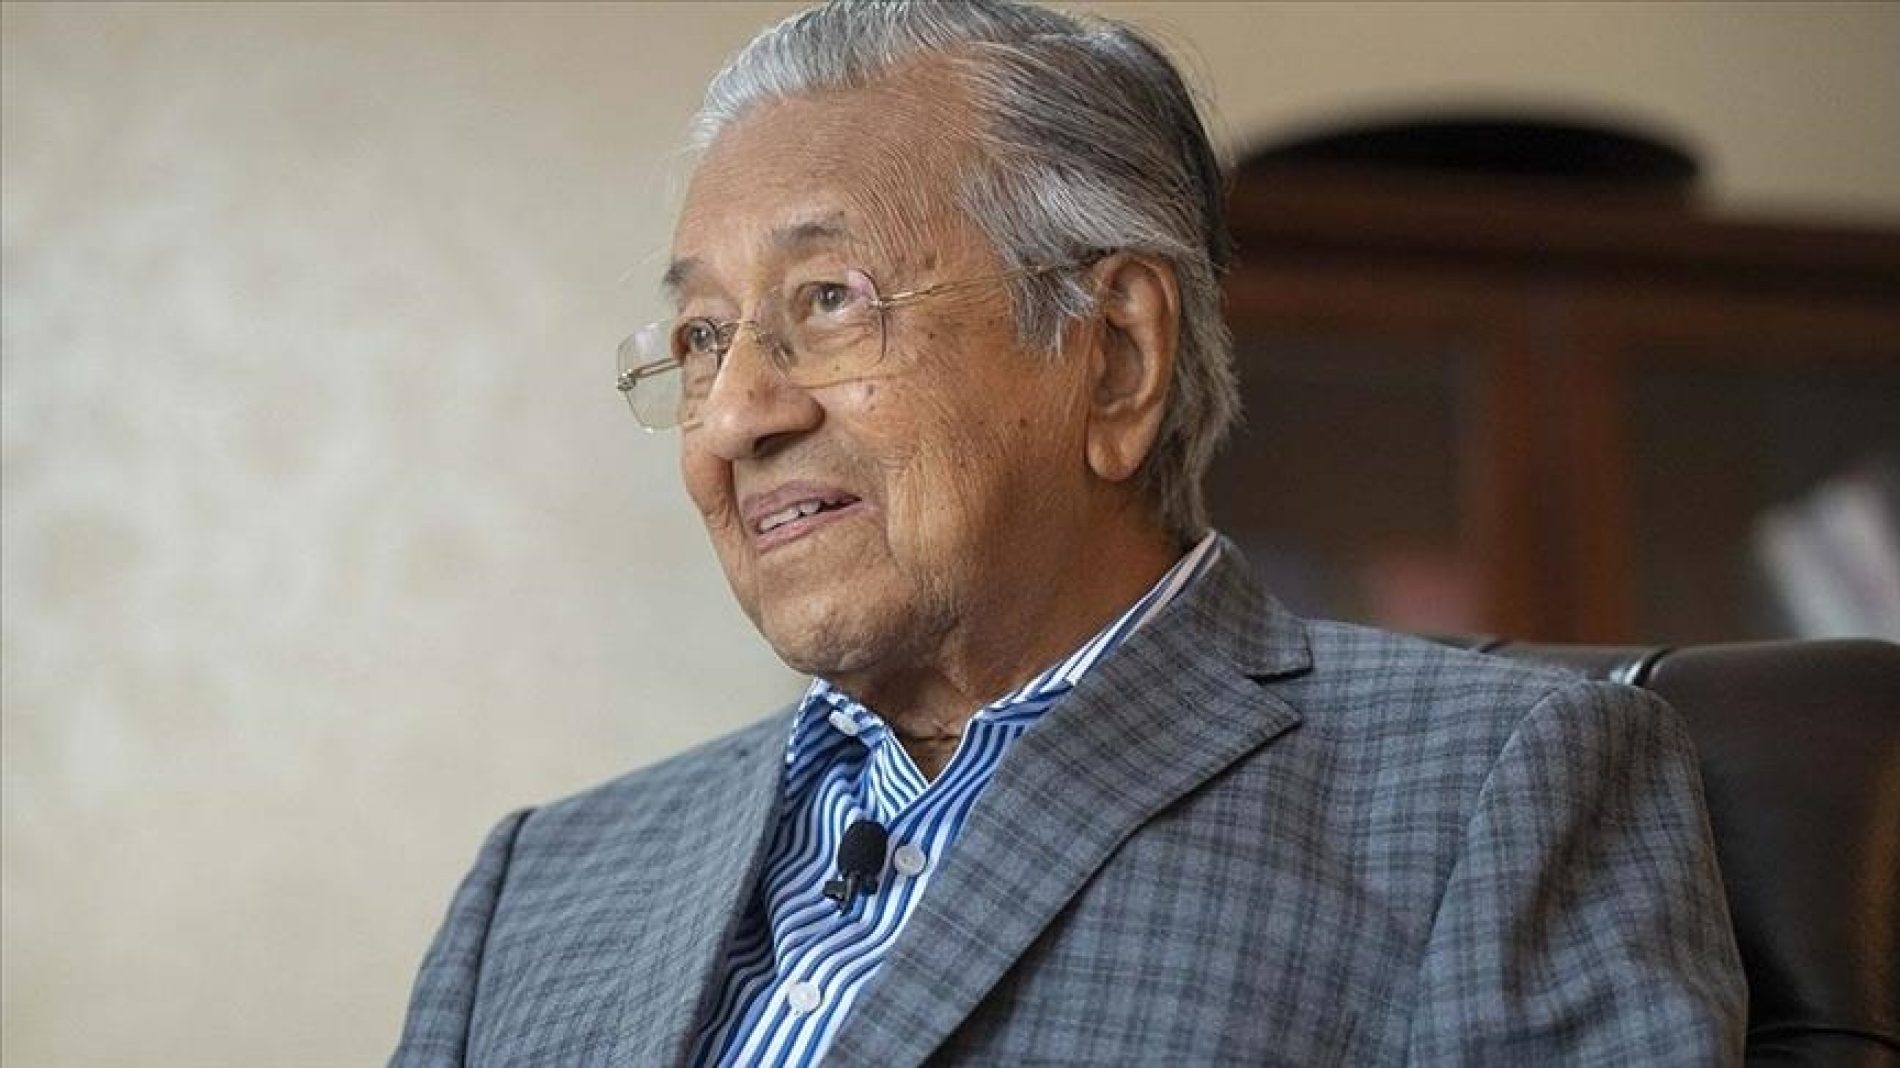 Mahathir Mohamad: Civilizacija koja je pravedna više ne postoji